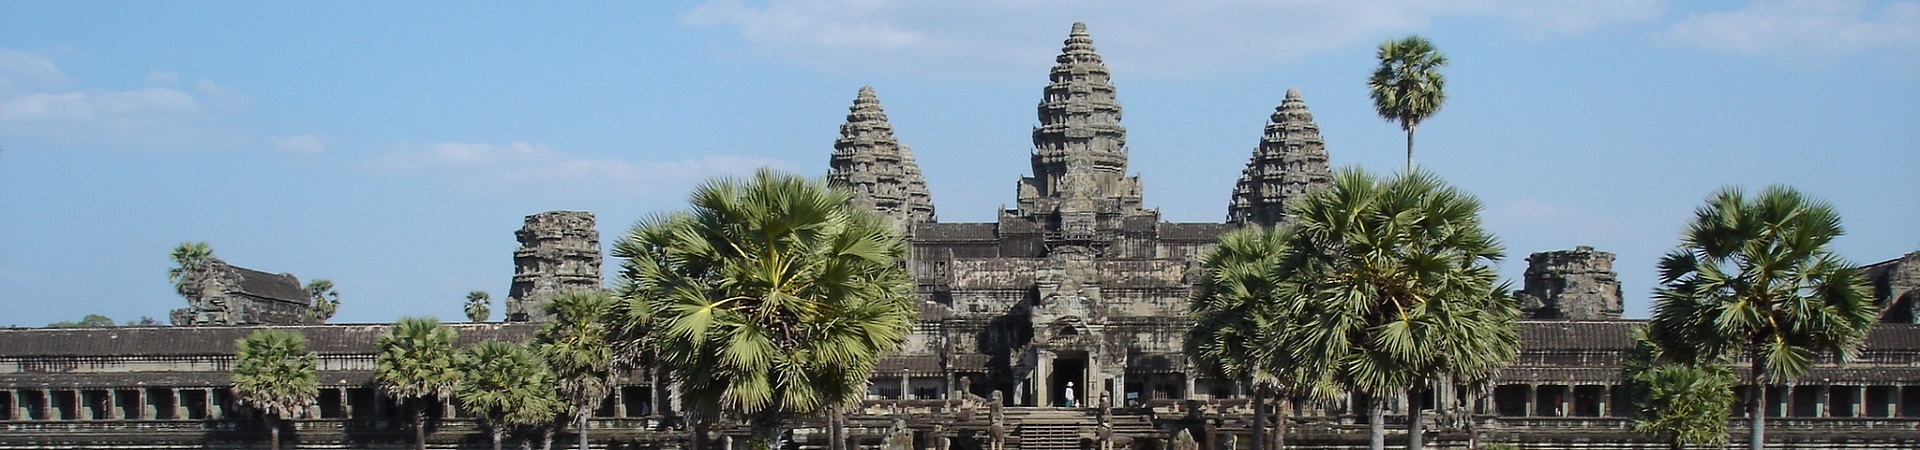 Image of Experience Angkor Wat